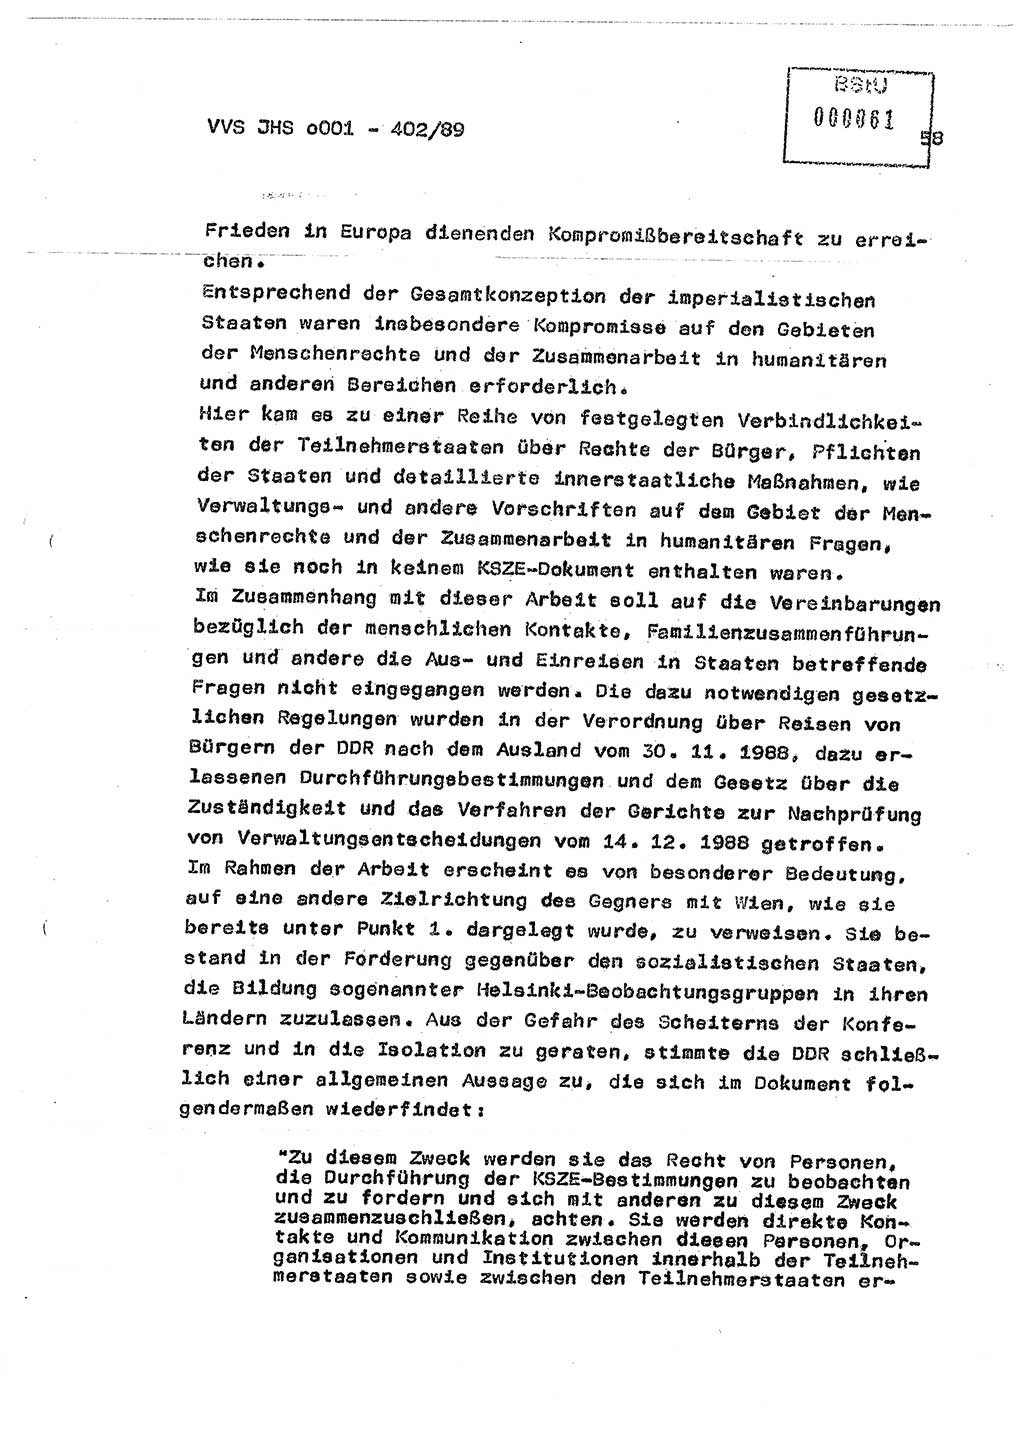 Diplomarbeit Major Günter Müller (HA Ⅸ/9), Ministerium für Staatssicherheit (MfS) [Deutsche Demokratische Republik (DDR)], Juristische Hochschule (JHS), Vertrauliche Verschlußsache (VVS) o001-402/89, Potsdam 1989, Seite 58 (Dipl.-Arb. MfS DDR JHS VVS o001-402/89 1989, S. 58)